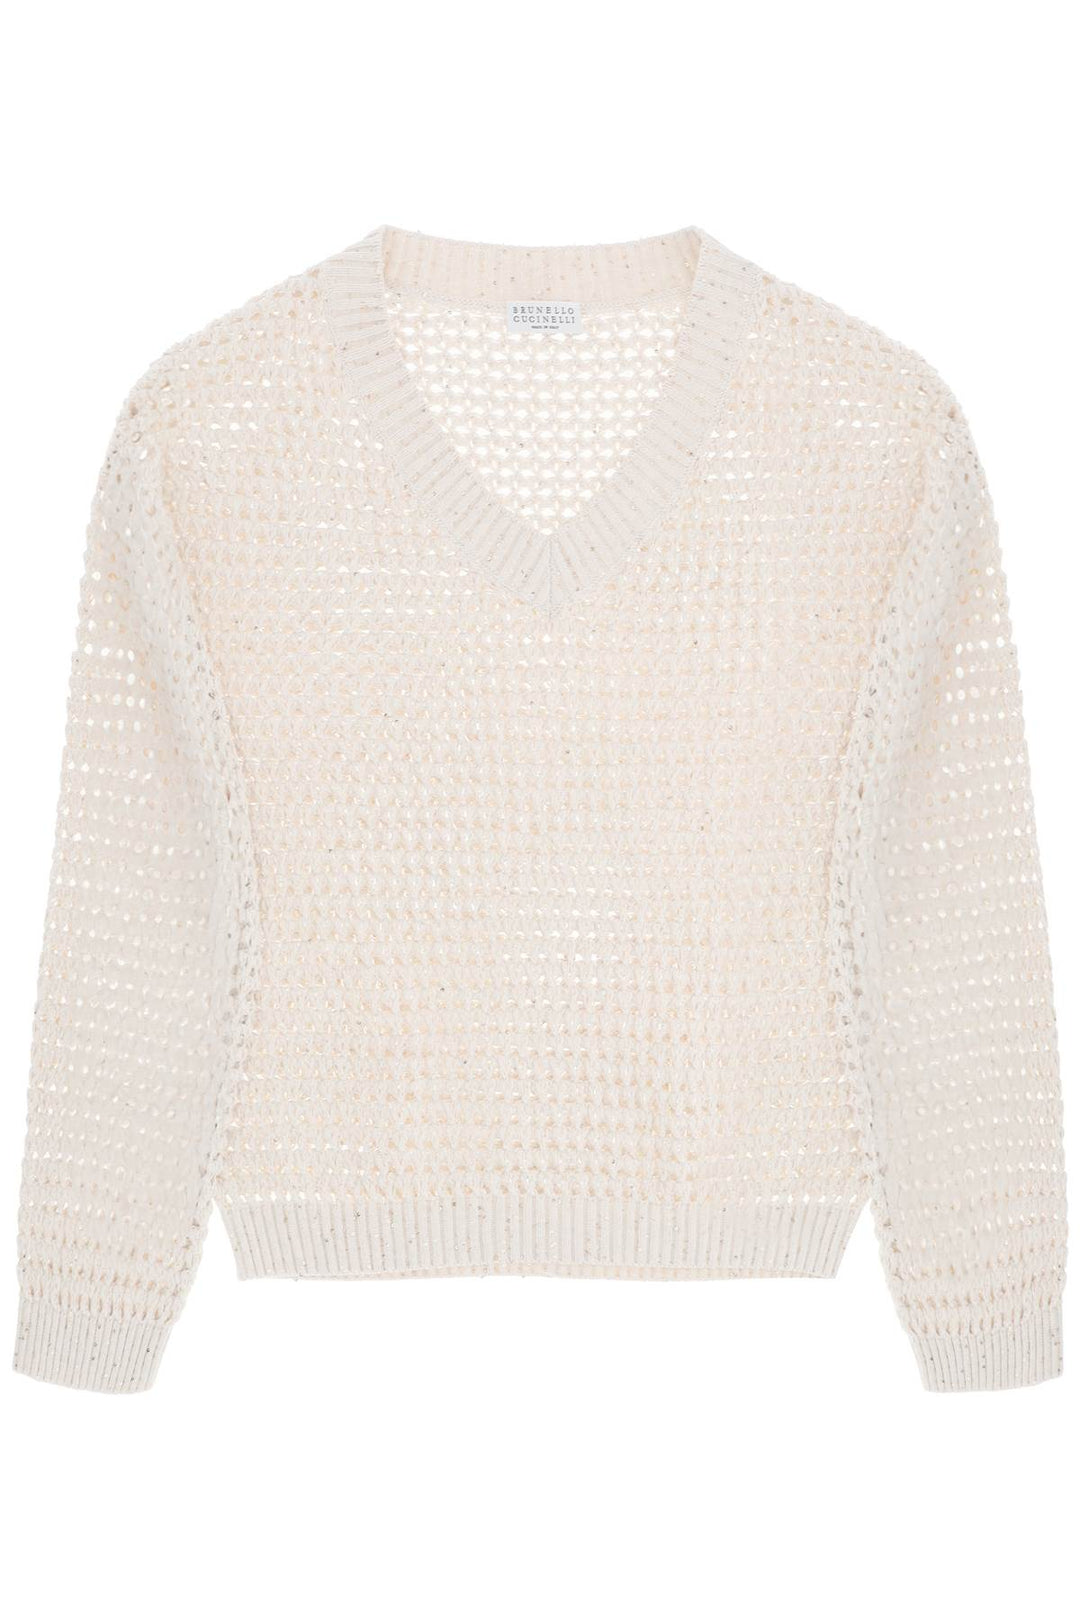 Brunello Cucinelli Dazzling Net Cotton Sweater   Neutro